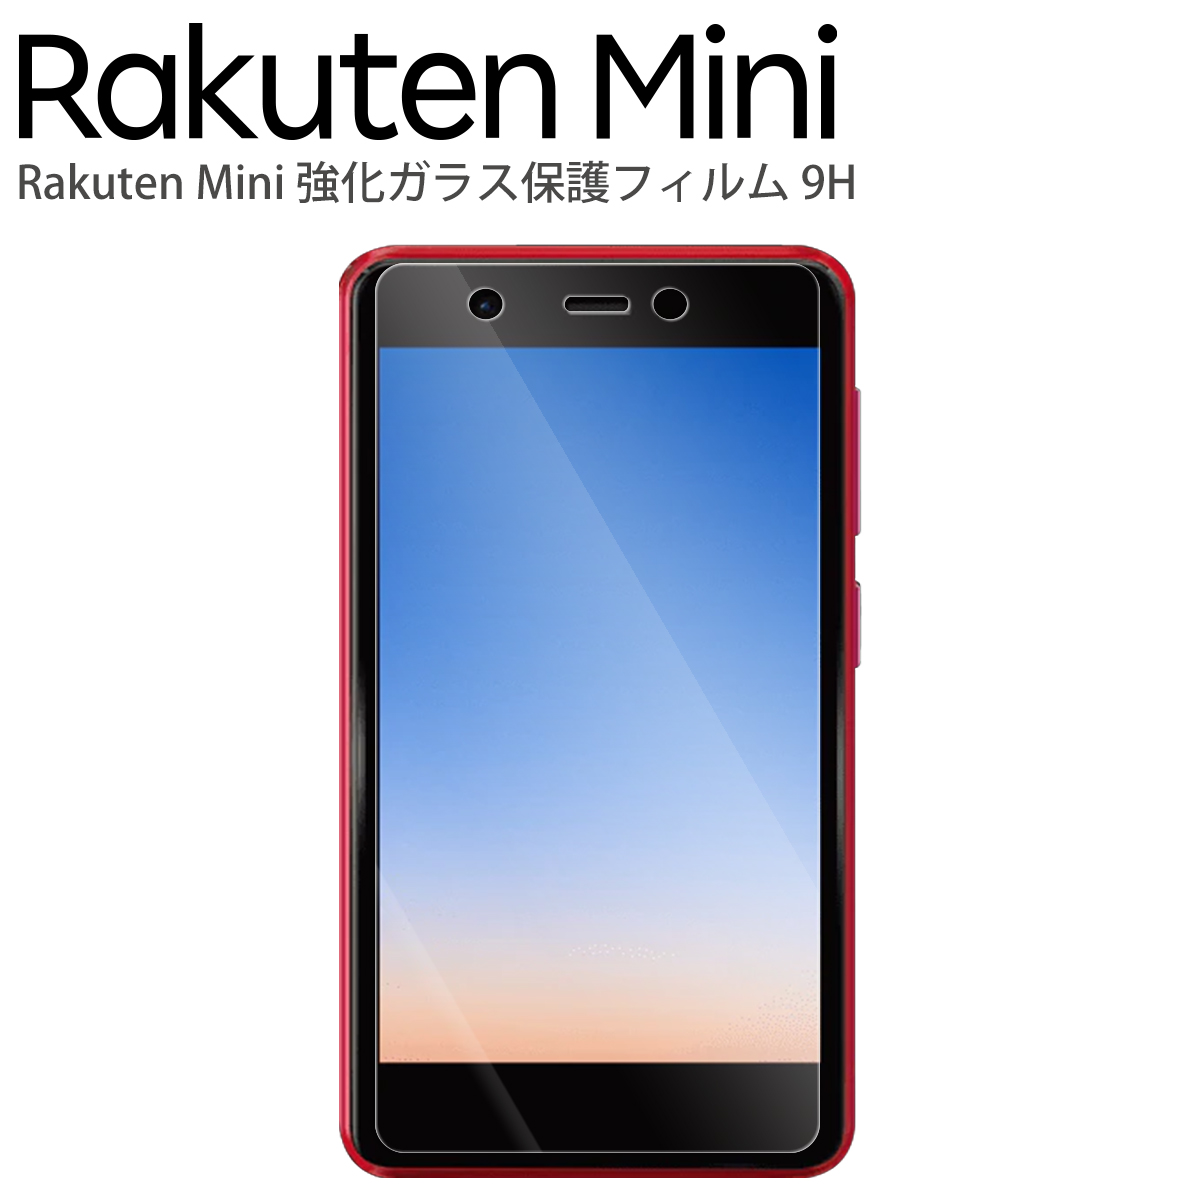 Rakuten Mini 強化ガラス保護フィルム 9H